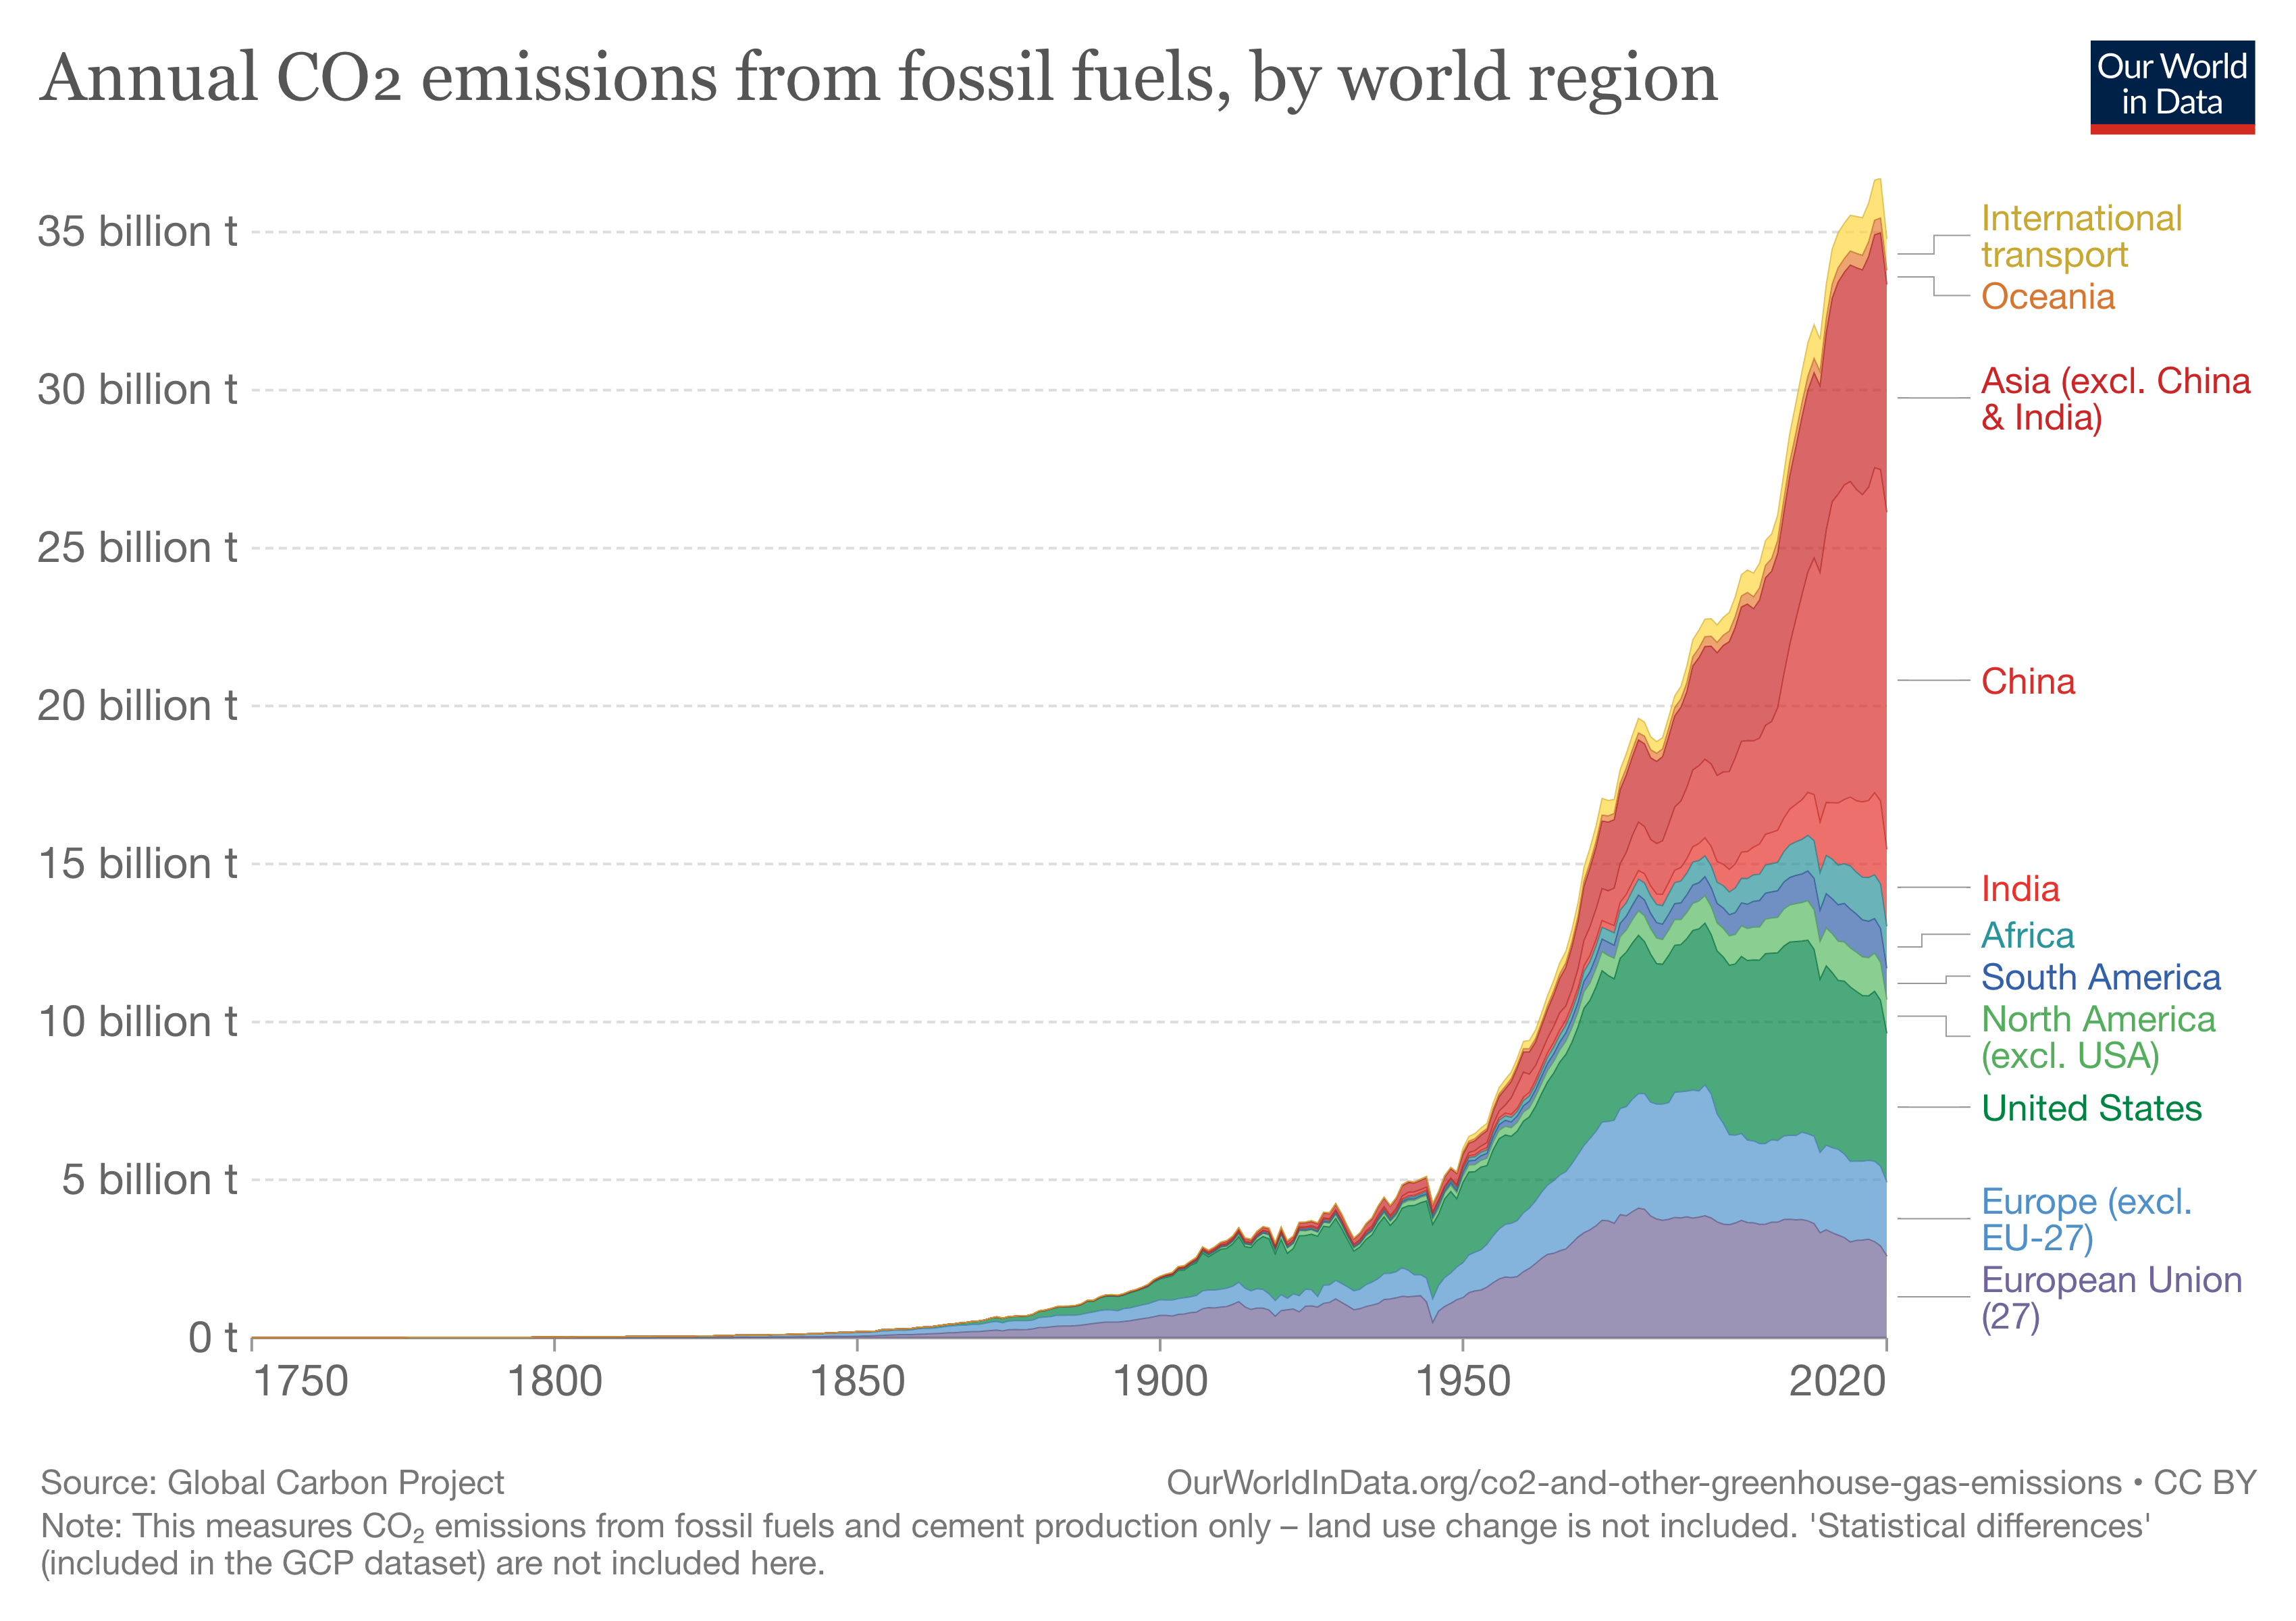 Global CO2 emissions